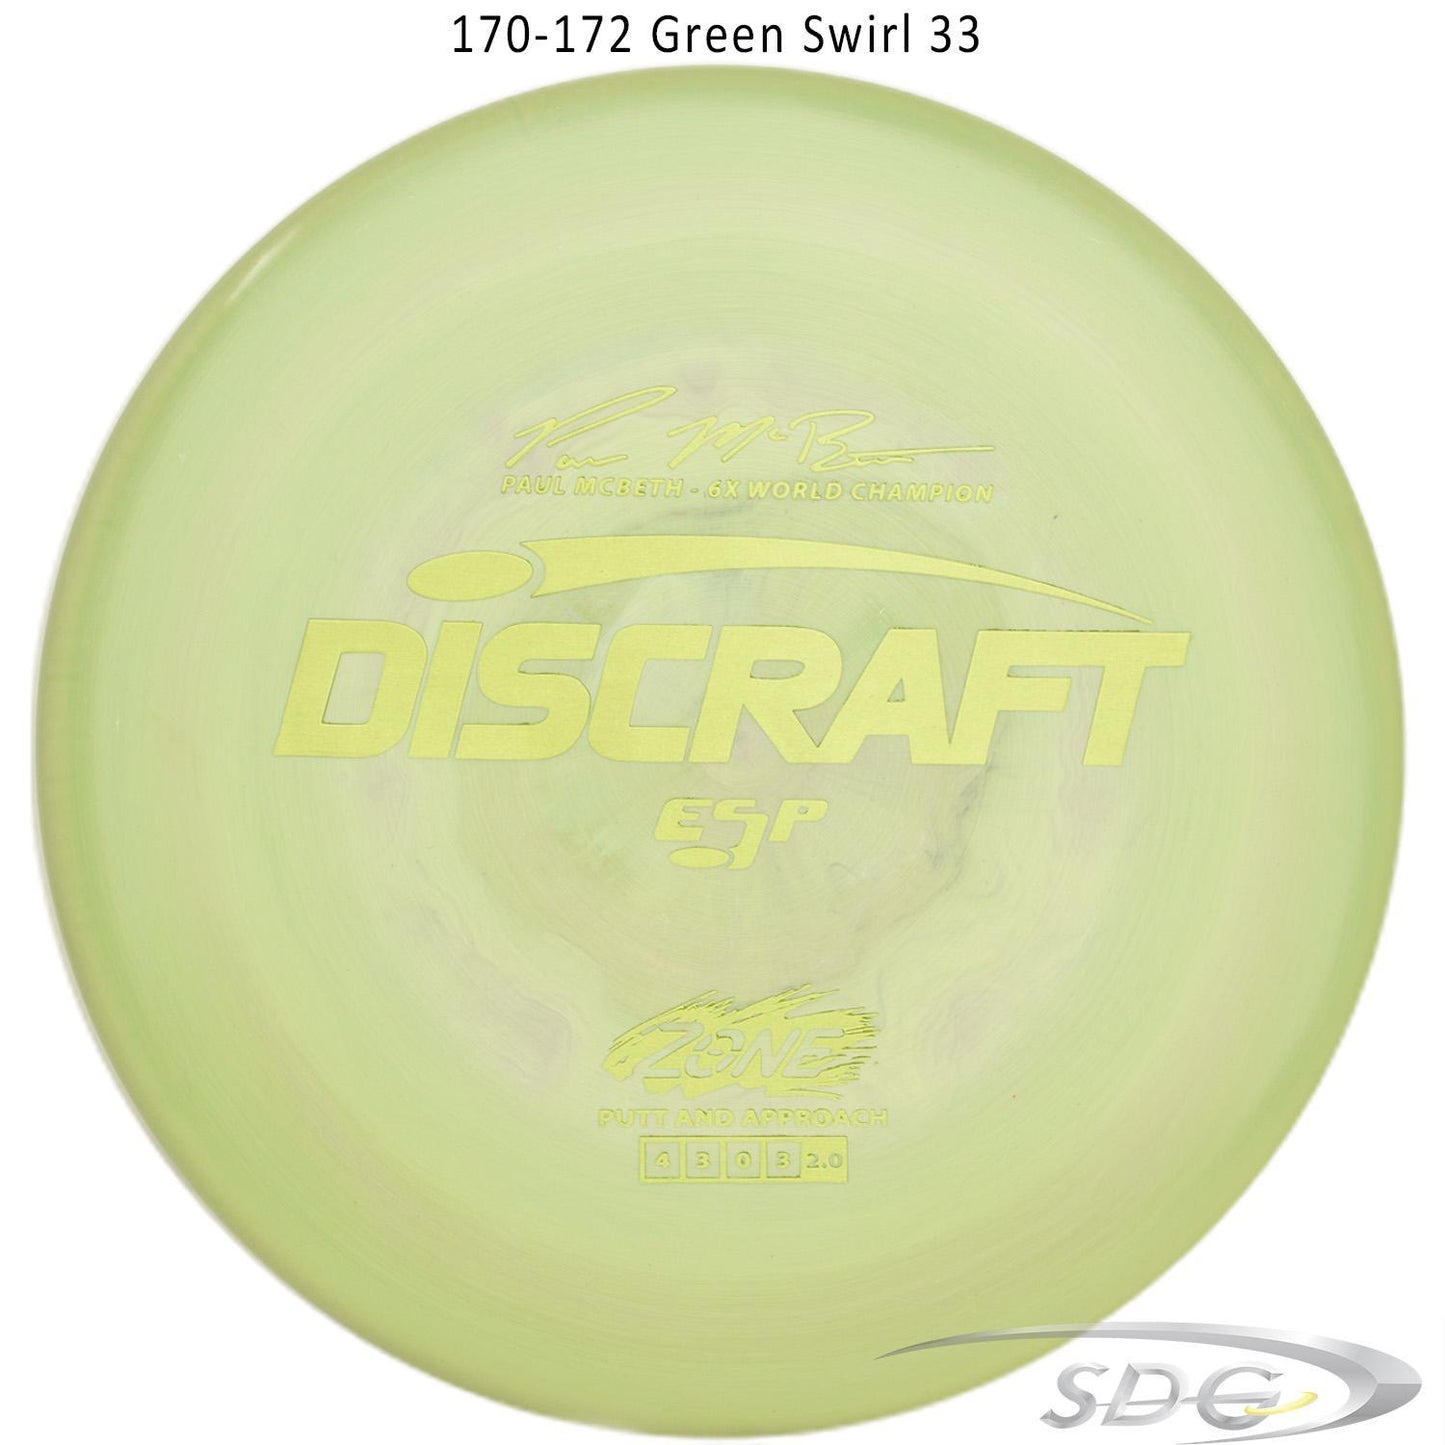 discraft-esp-zone-6x-paul-mcbeth-signature-series-disc-golf-putter 170-172 Green Swirl 33